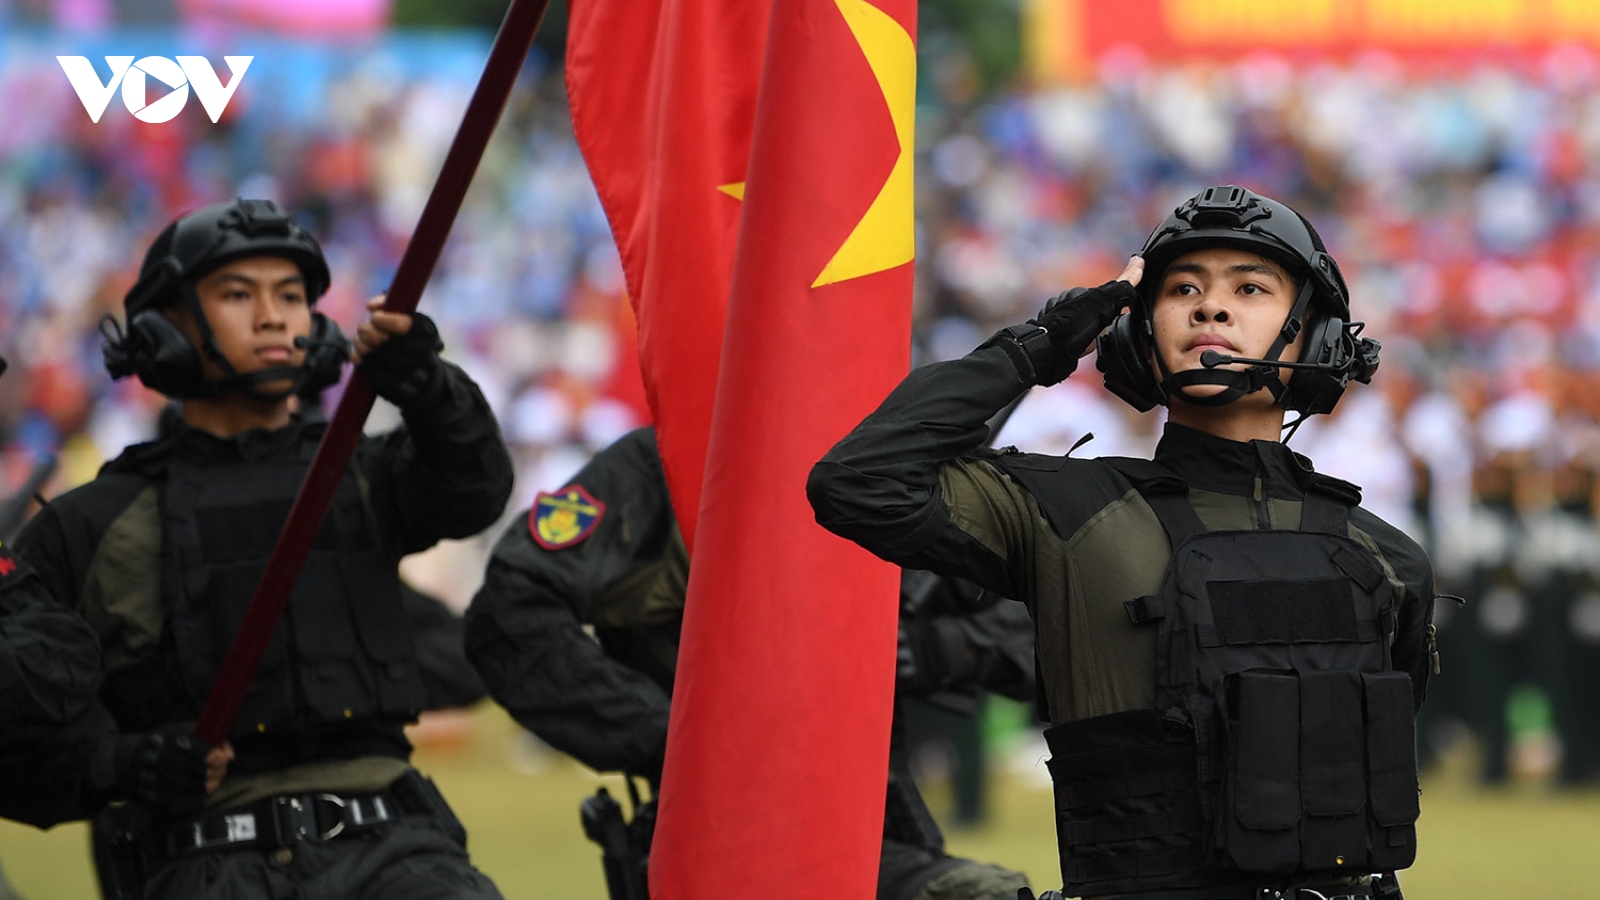 Trực tiếp: Người dân hân hoan chào đón các khối diễu binh, diễu hành ở Điện Biên Phủ